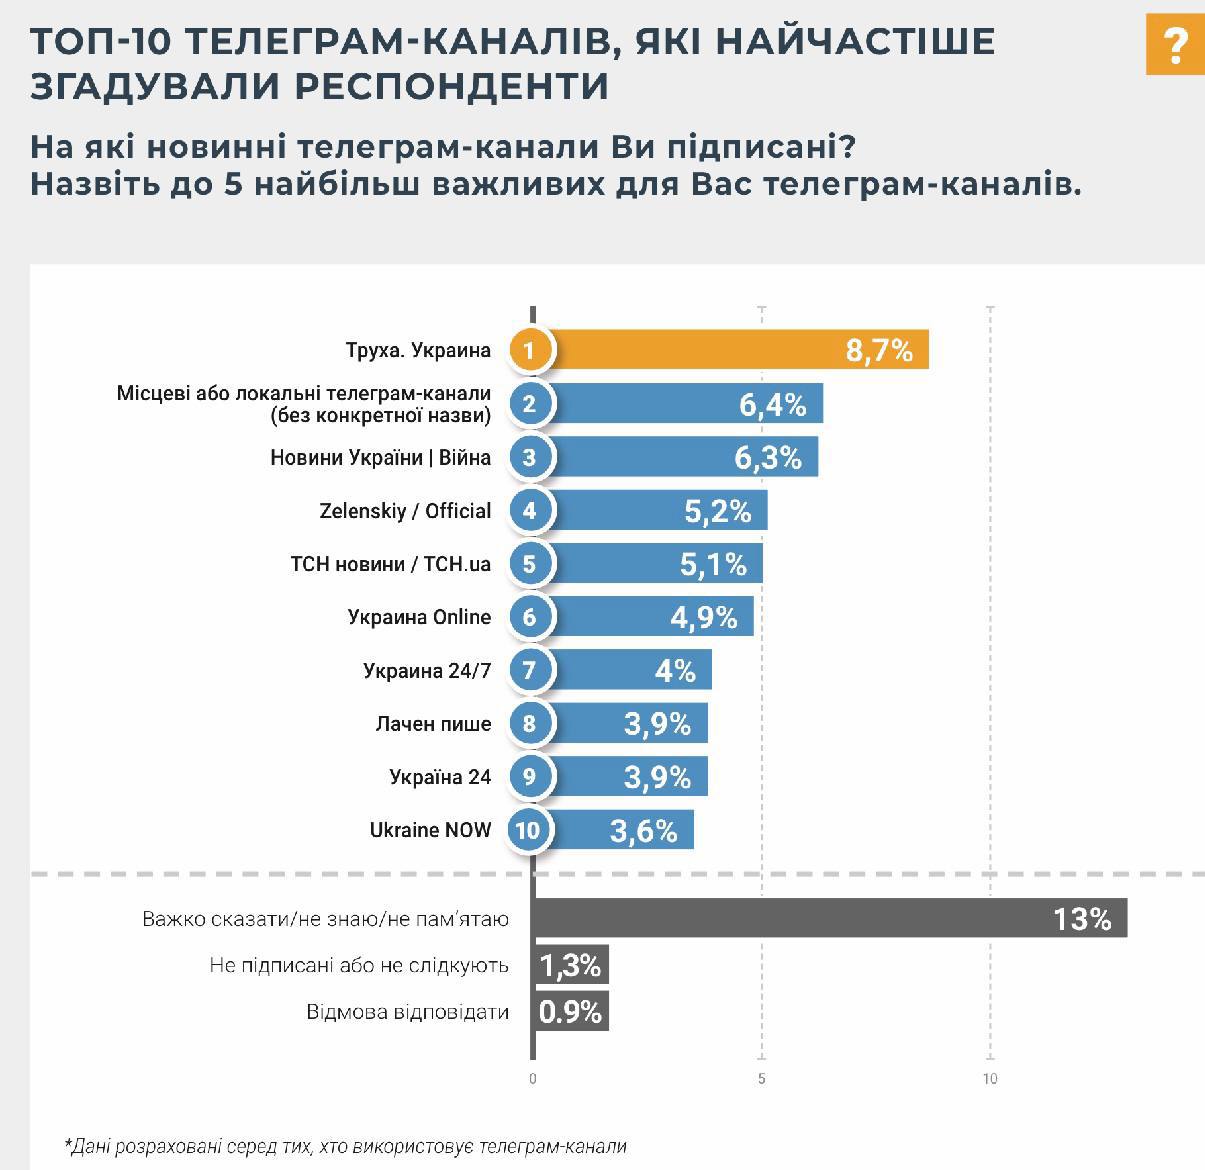 «Труха» — найвідоміший телеграм-канал України